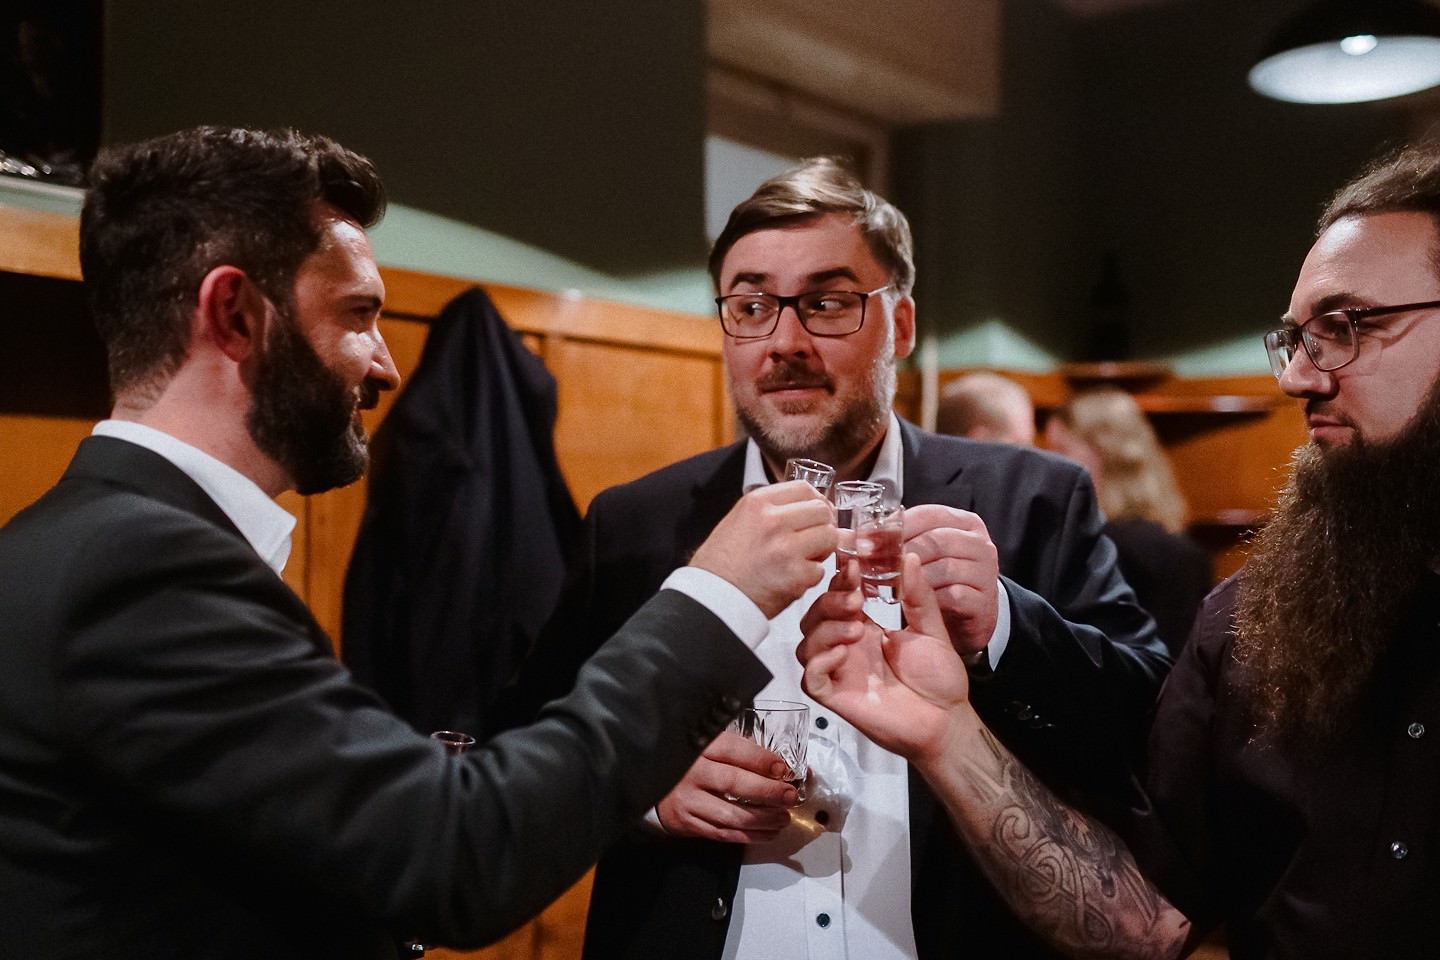 Gäste auf der Hochzeit trinken Schnaps mit dem Bräutigam